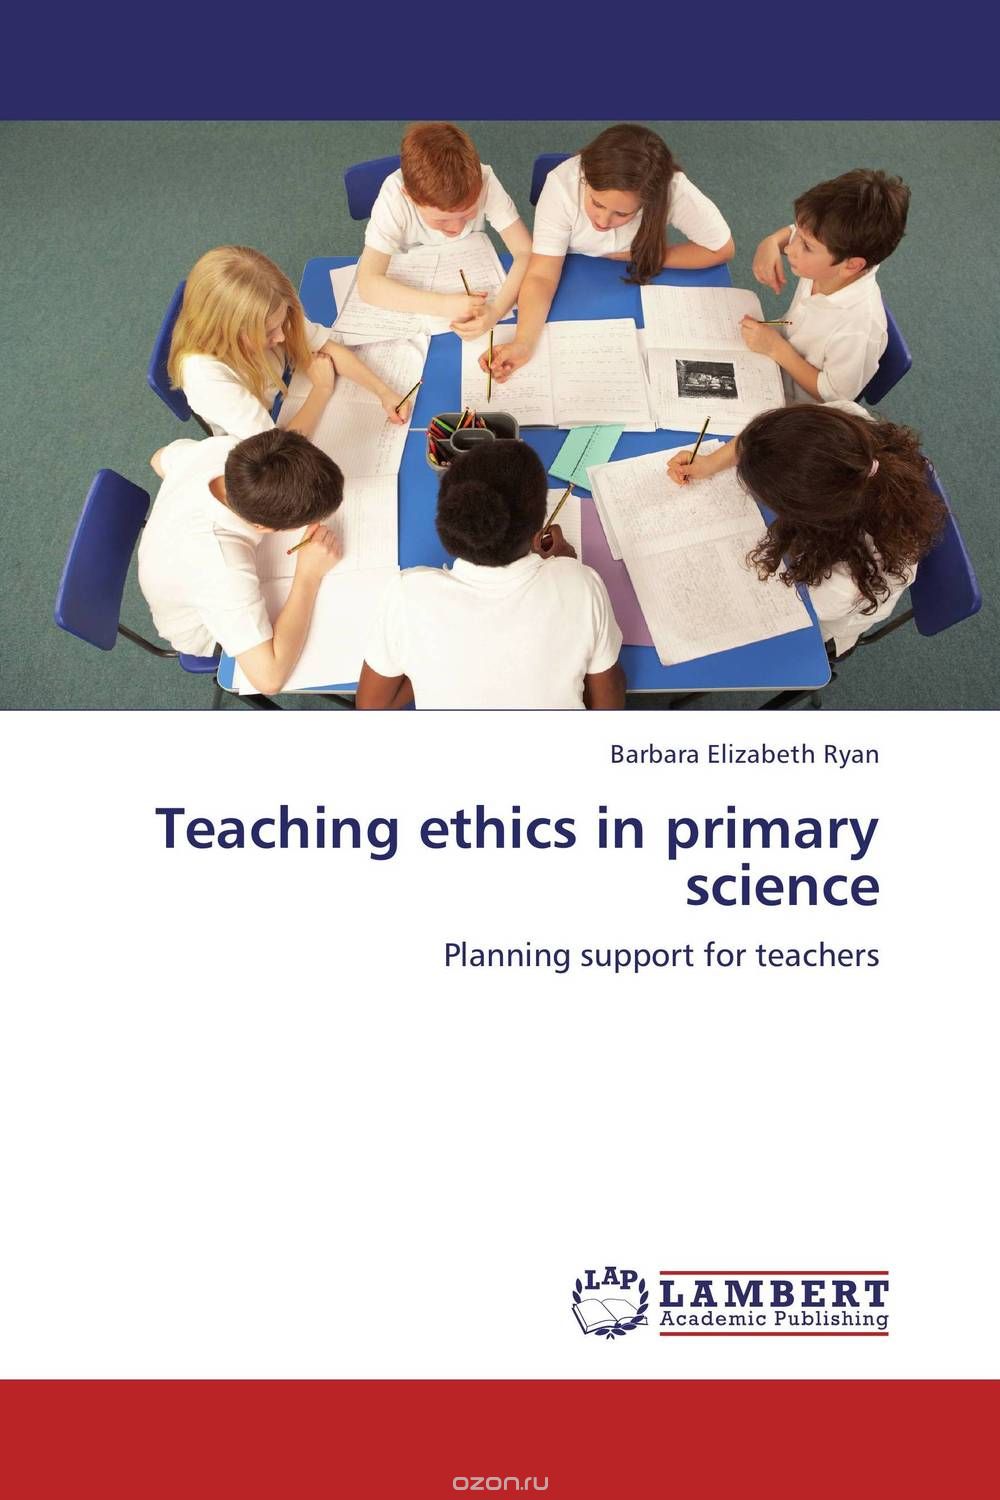 Скачать книгу "Teaching ethics in primary science"